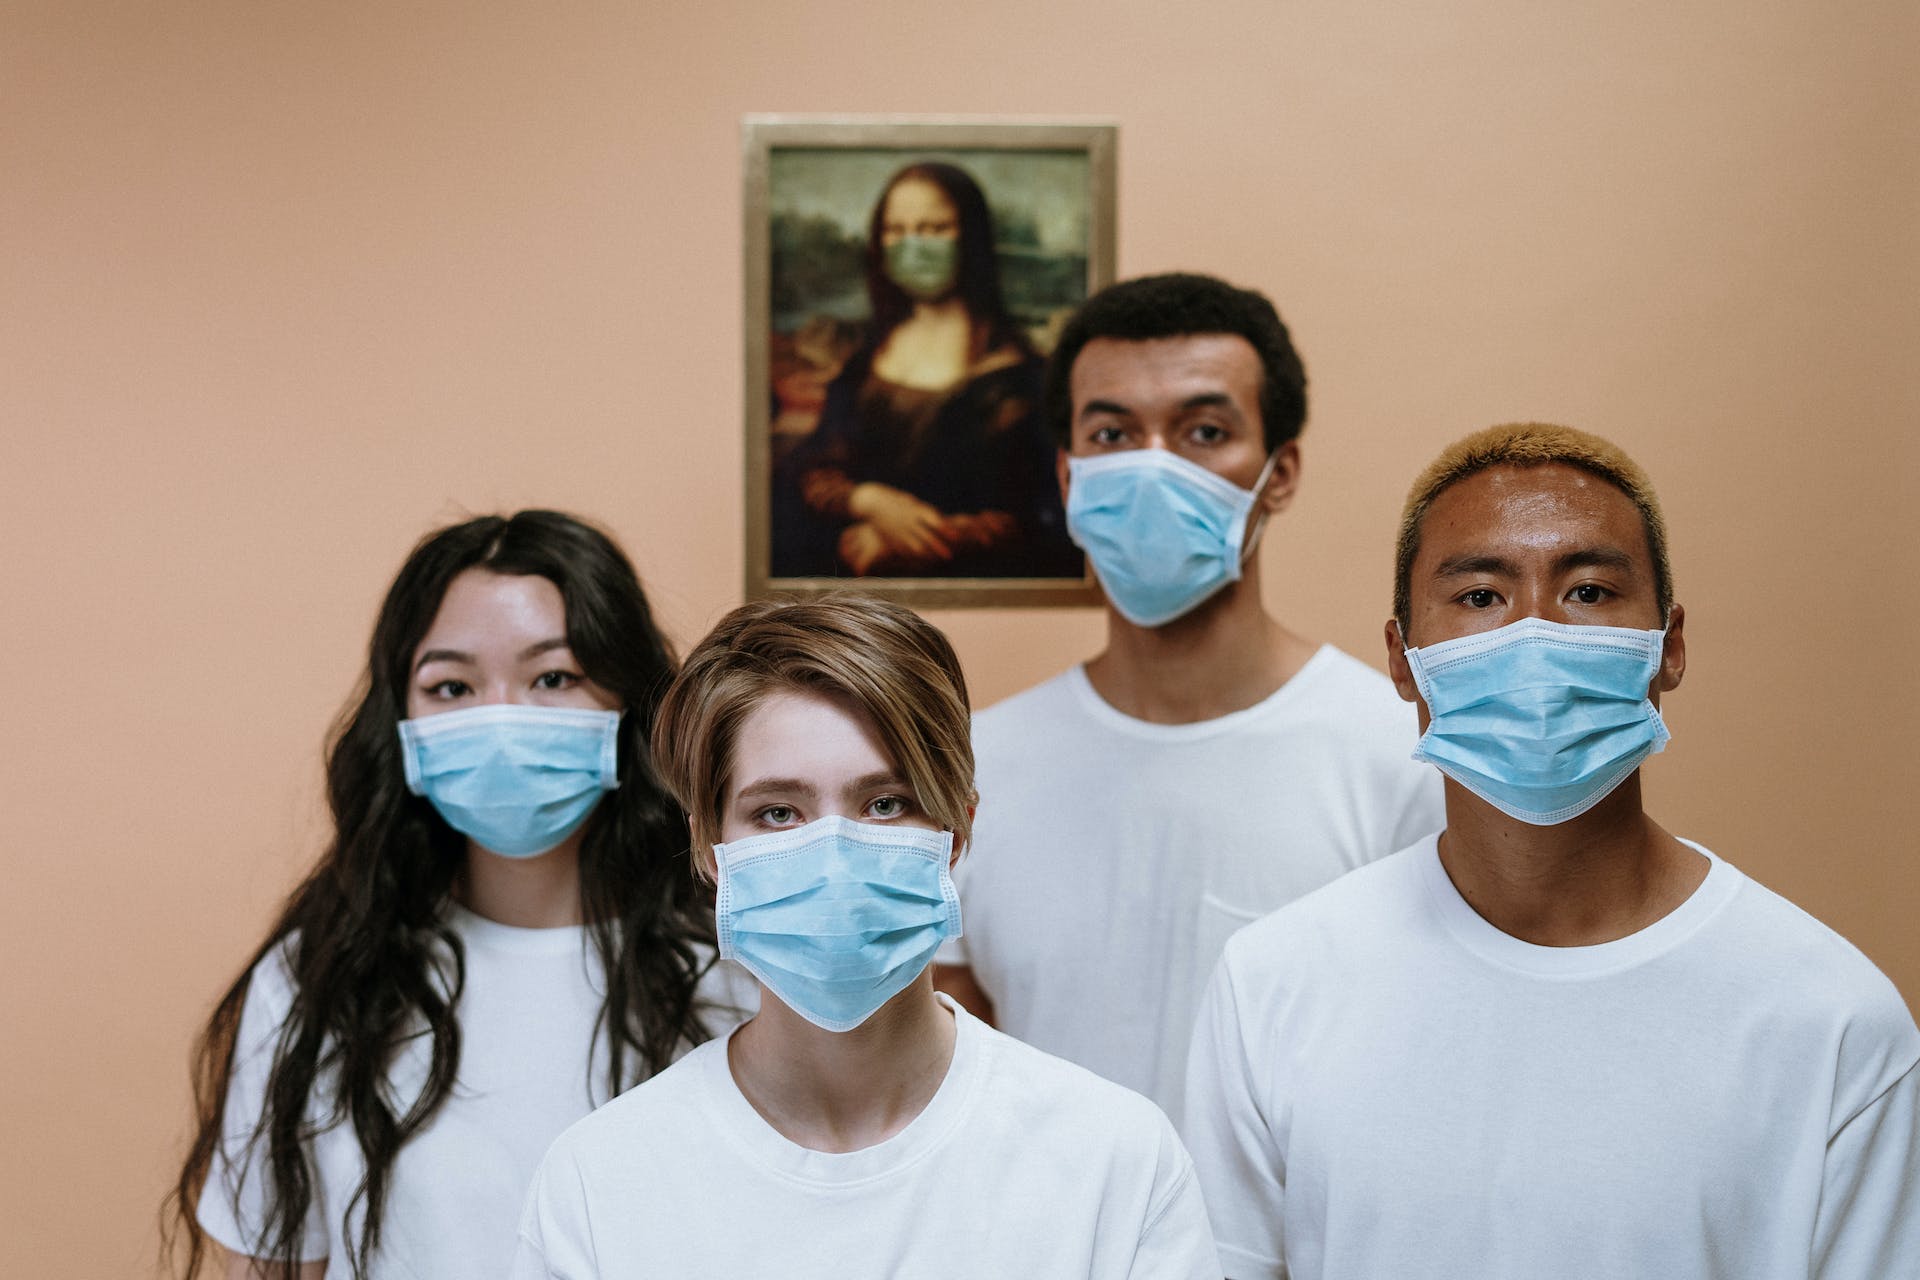 Libur Nataru, Masyarakat Diimbau Kembali Pakai Masker dan Siapkan Hand Sanitizer